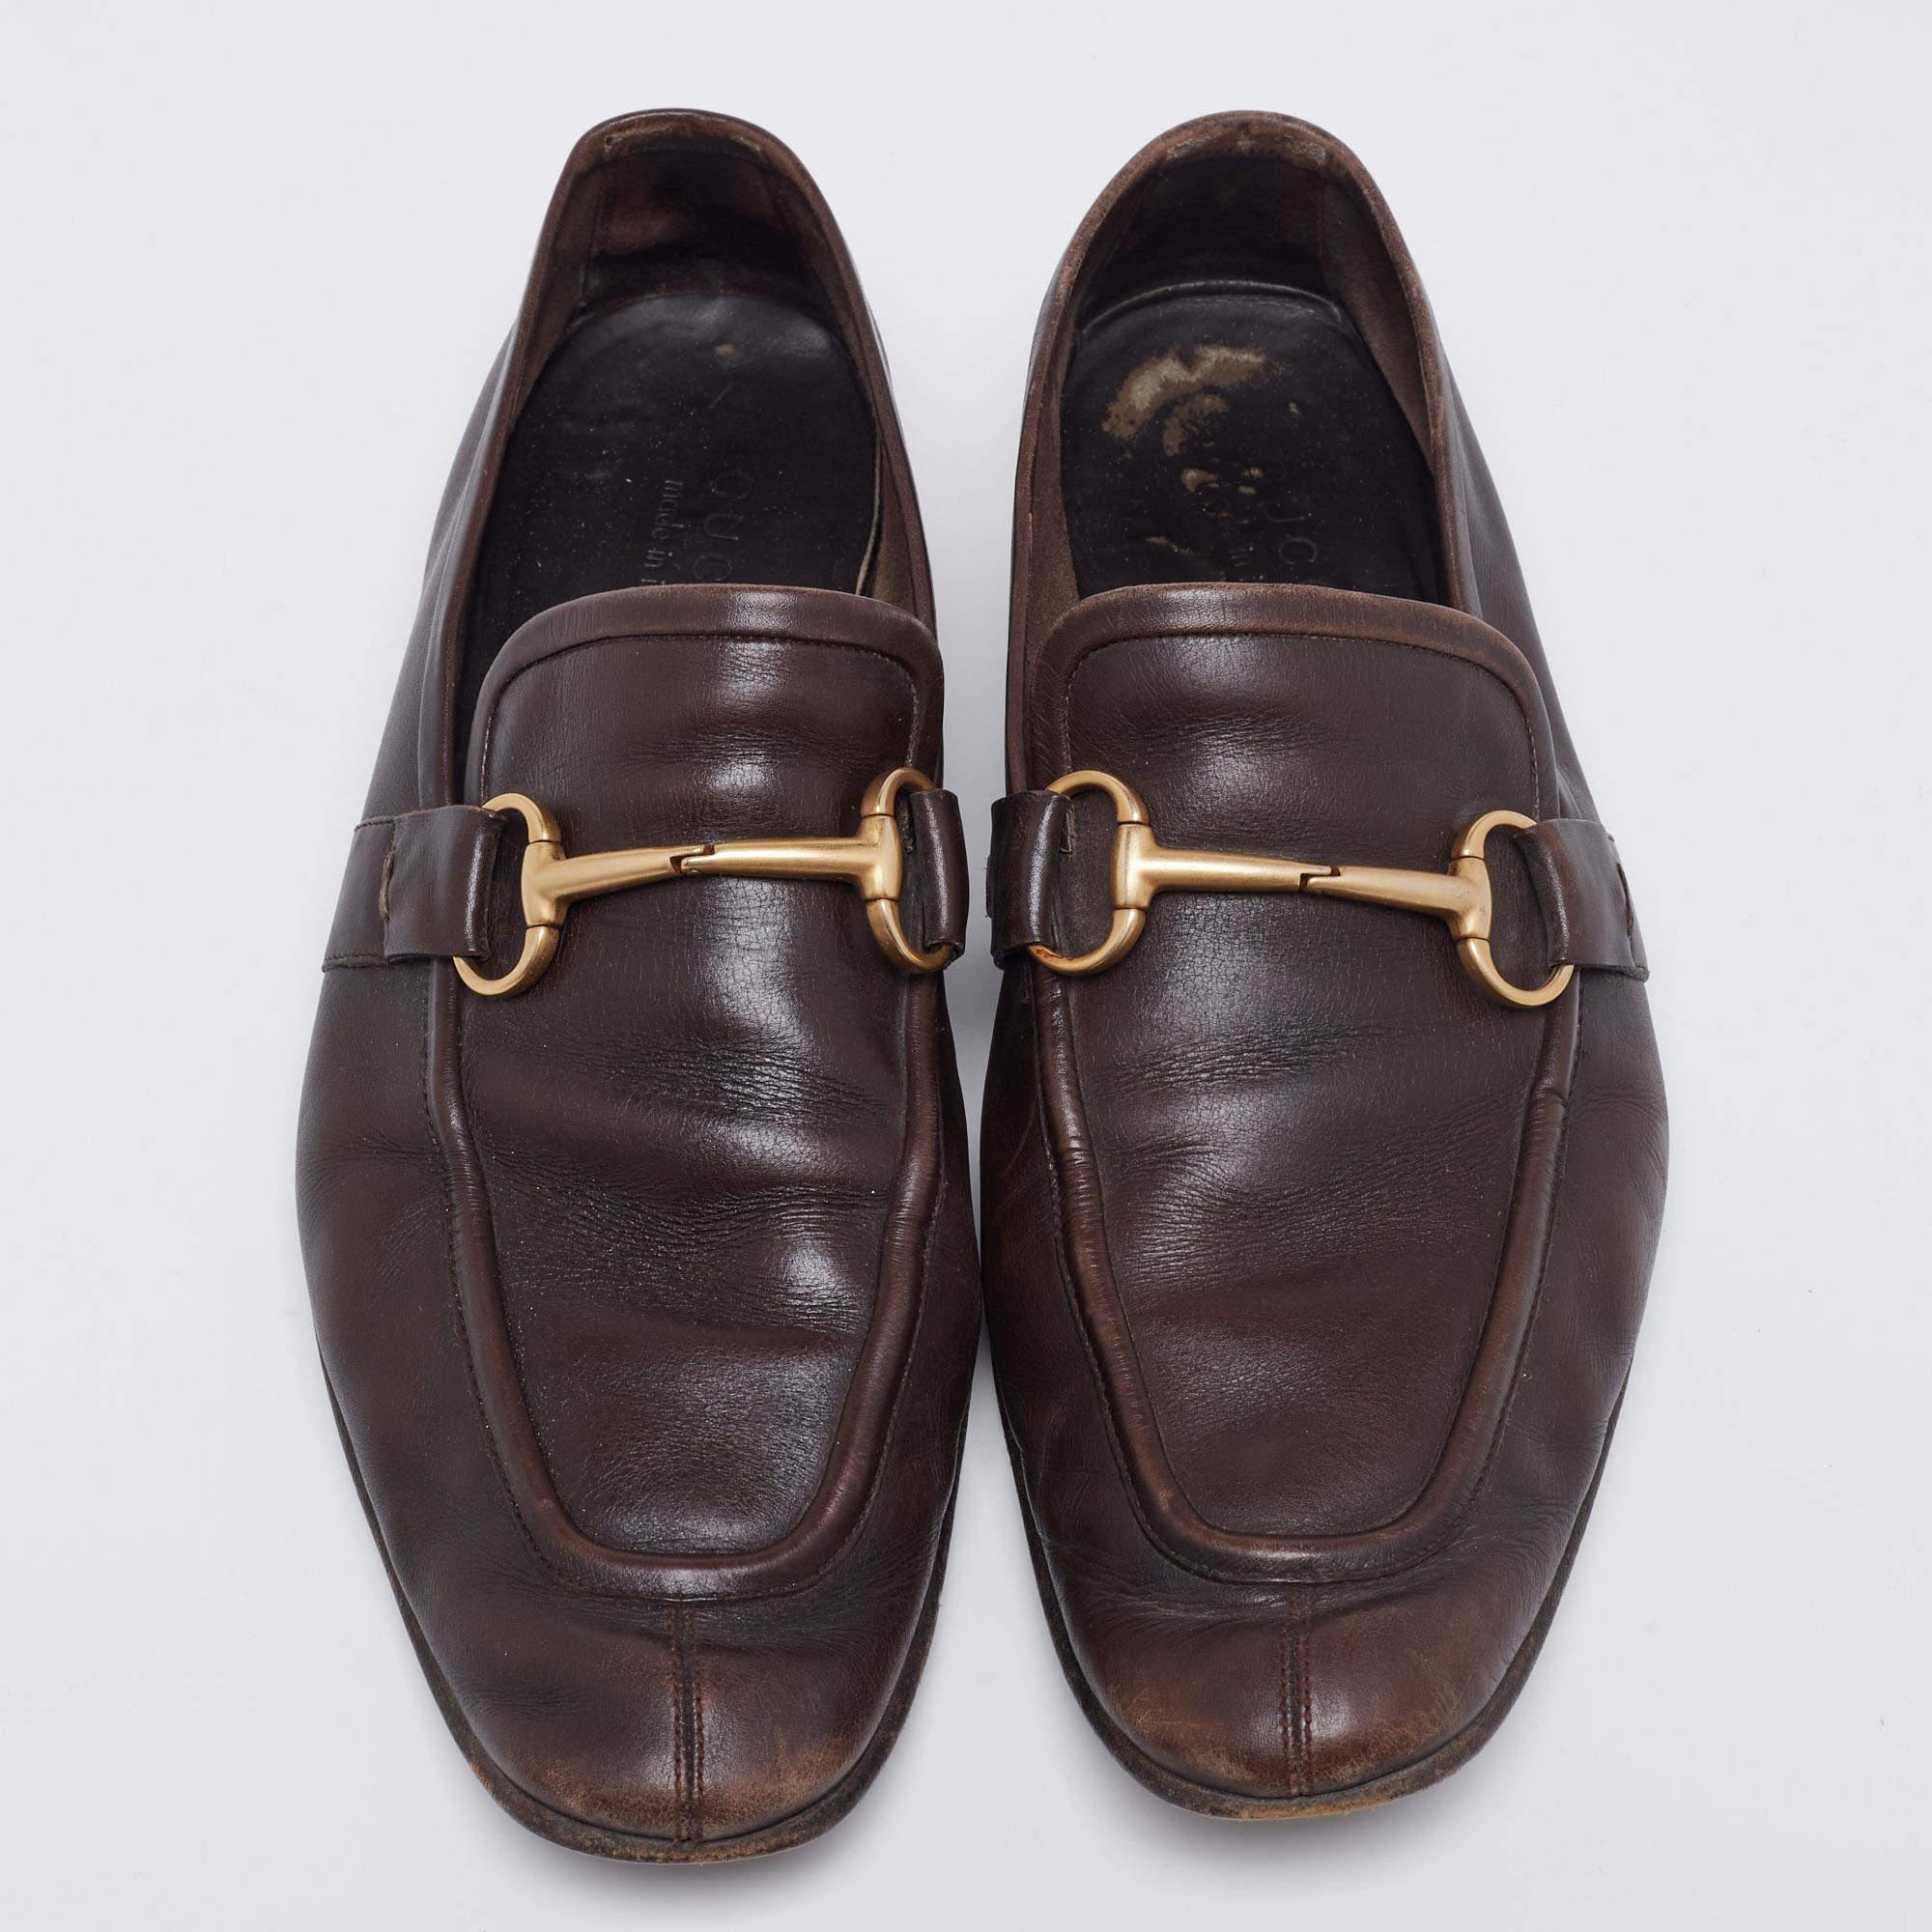 La Jordaan est une chaussure qui a une finition moderne et un attrait pour la signature. Il est doté d'un bout allongé et du motif Gucci Horsebit sur le dessus. Cette paire en marron foncé est fabriquée en cuir et cousue avec le plus grand soin pour